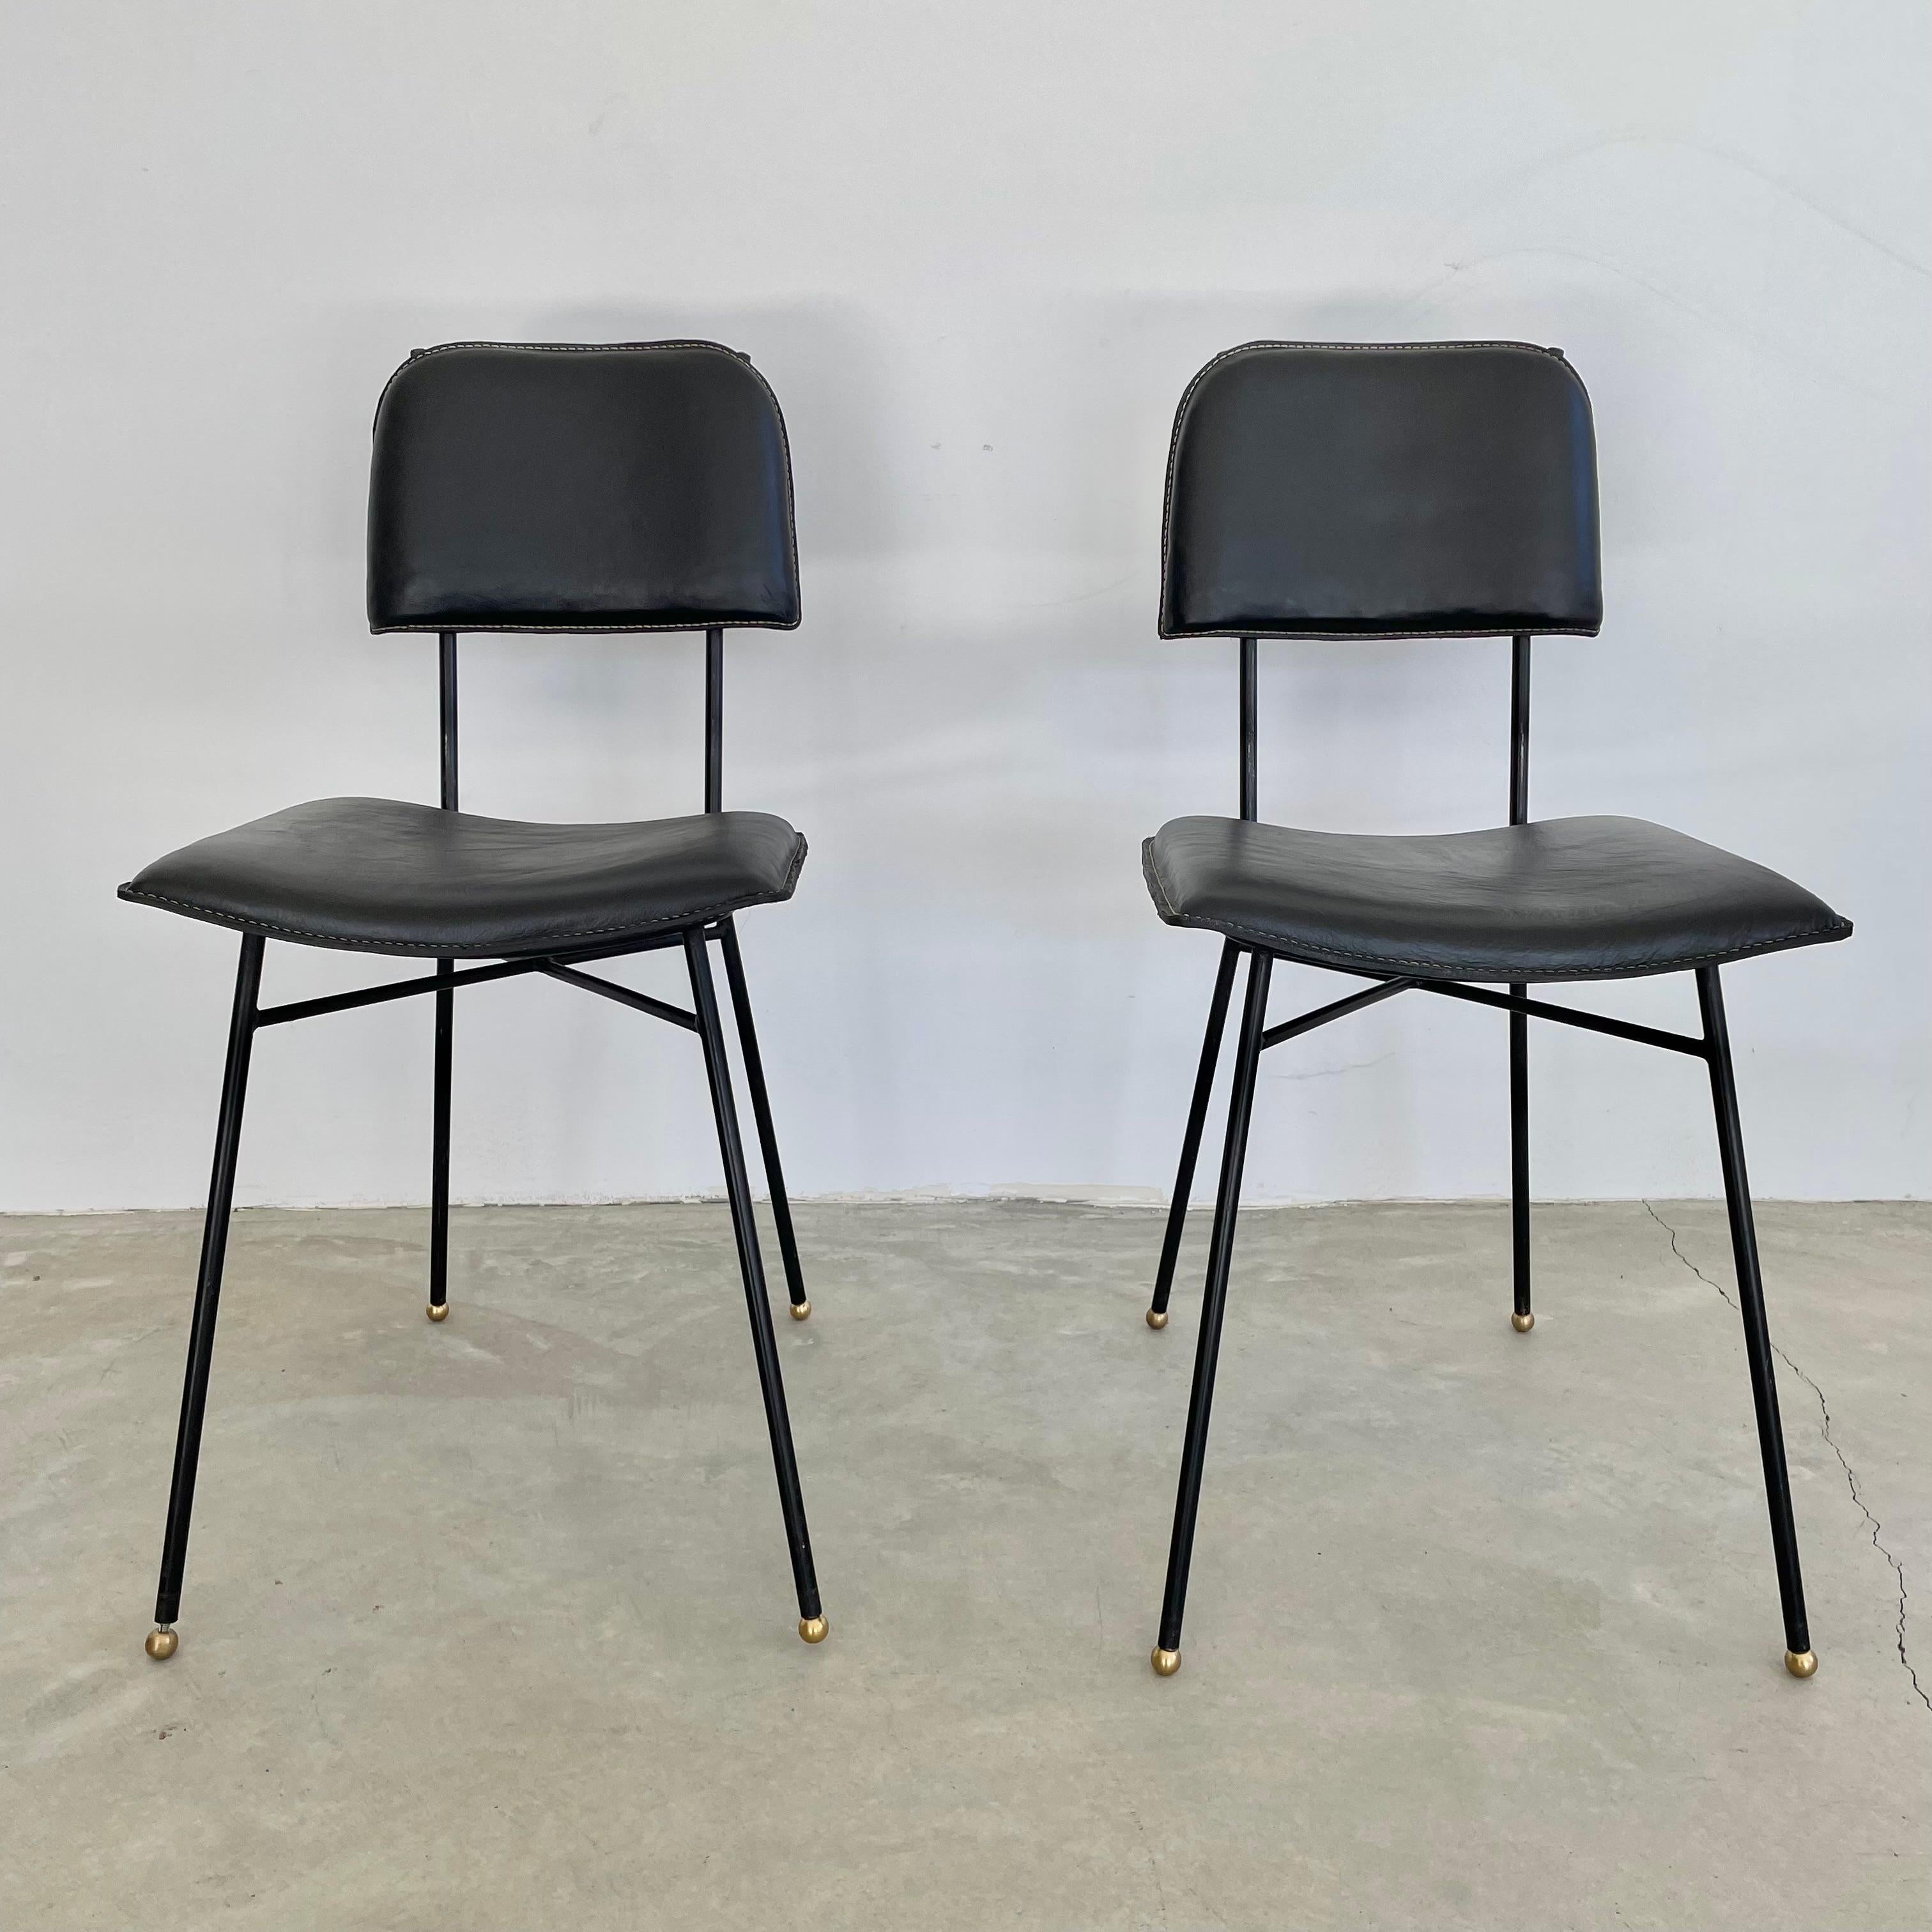 Eleganter Stuhl des französischen Designers Jacques Adnet. Eisengestell mit Sitz und Rückenlehne aus schwarzem Leder. Adnet-typische Kontrastnähte im gesamten Bereich. Kugelfüße aus Messing. Ausgezeichneter Zustand des Leders. Großartige